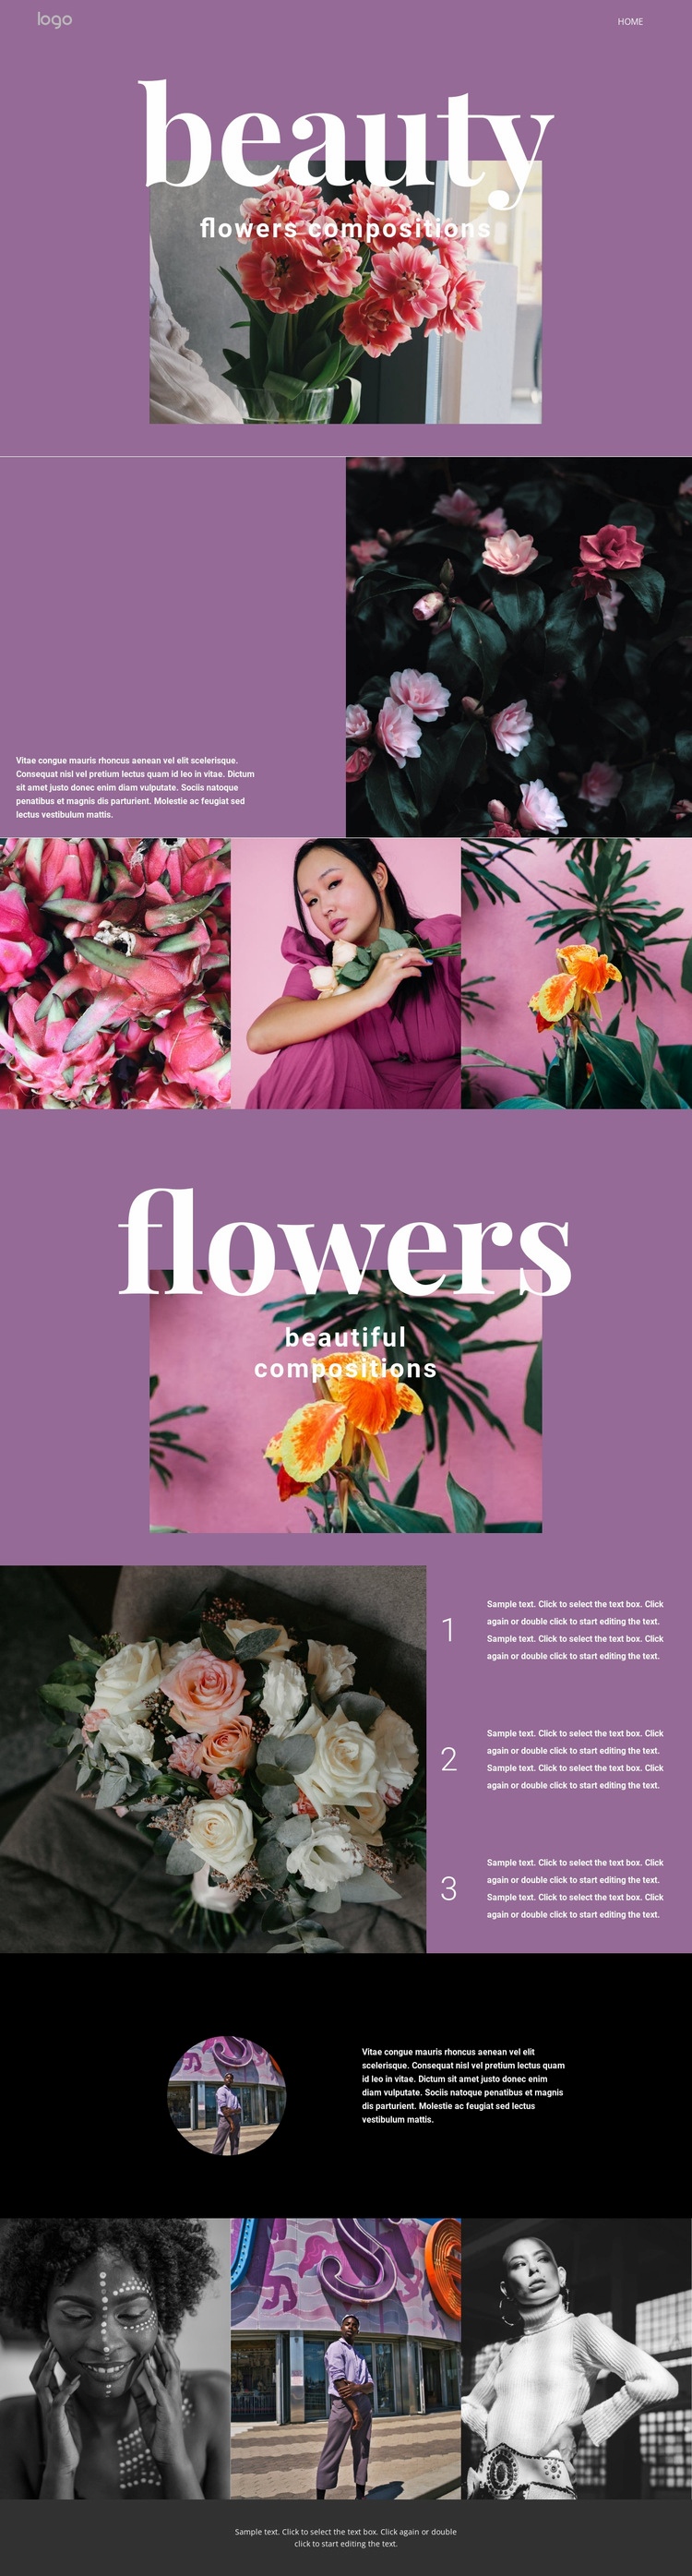 Flower salon Webflow Template Alternative